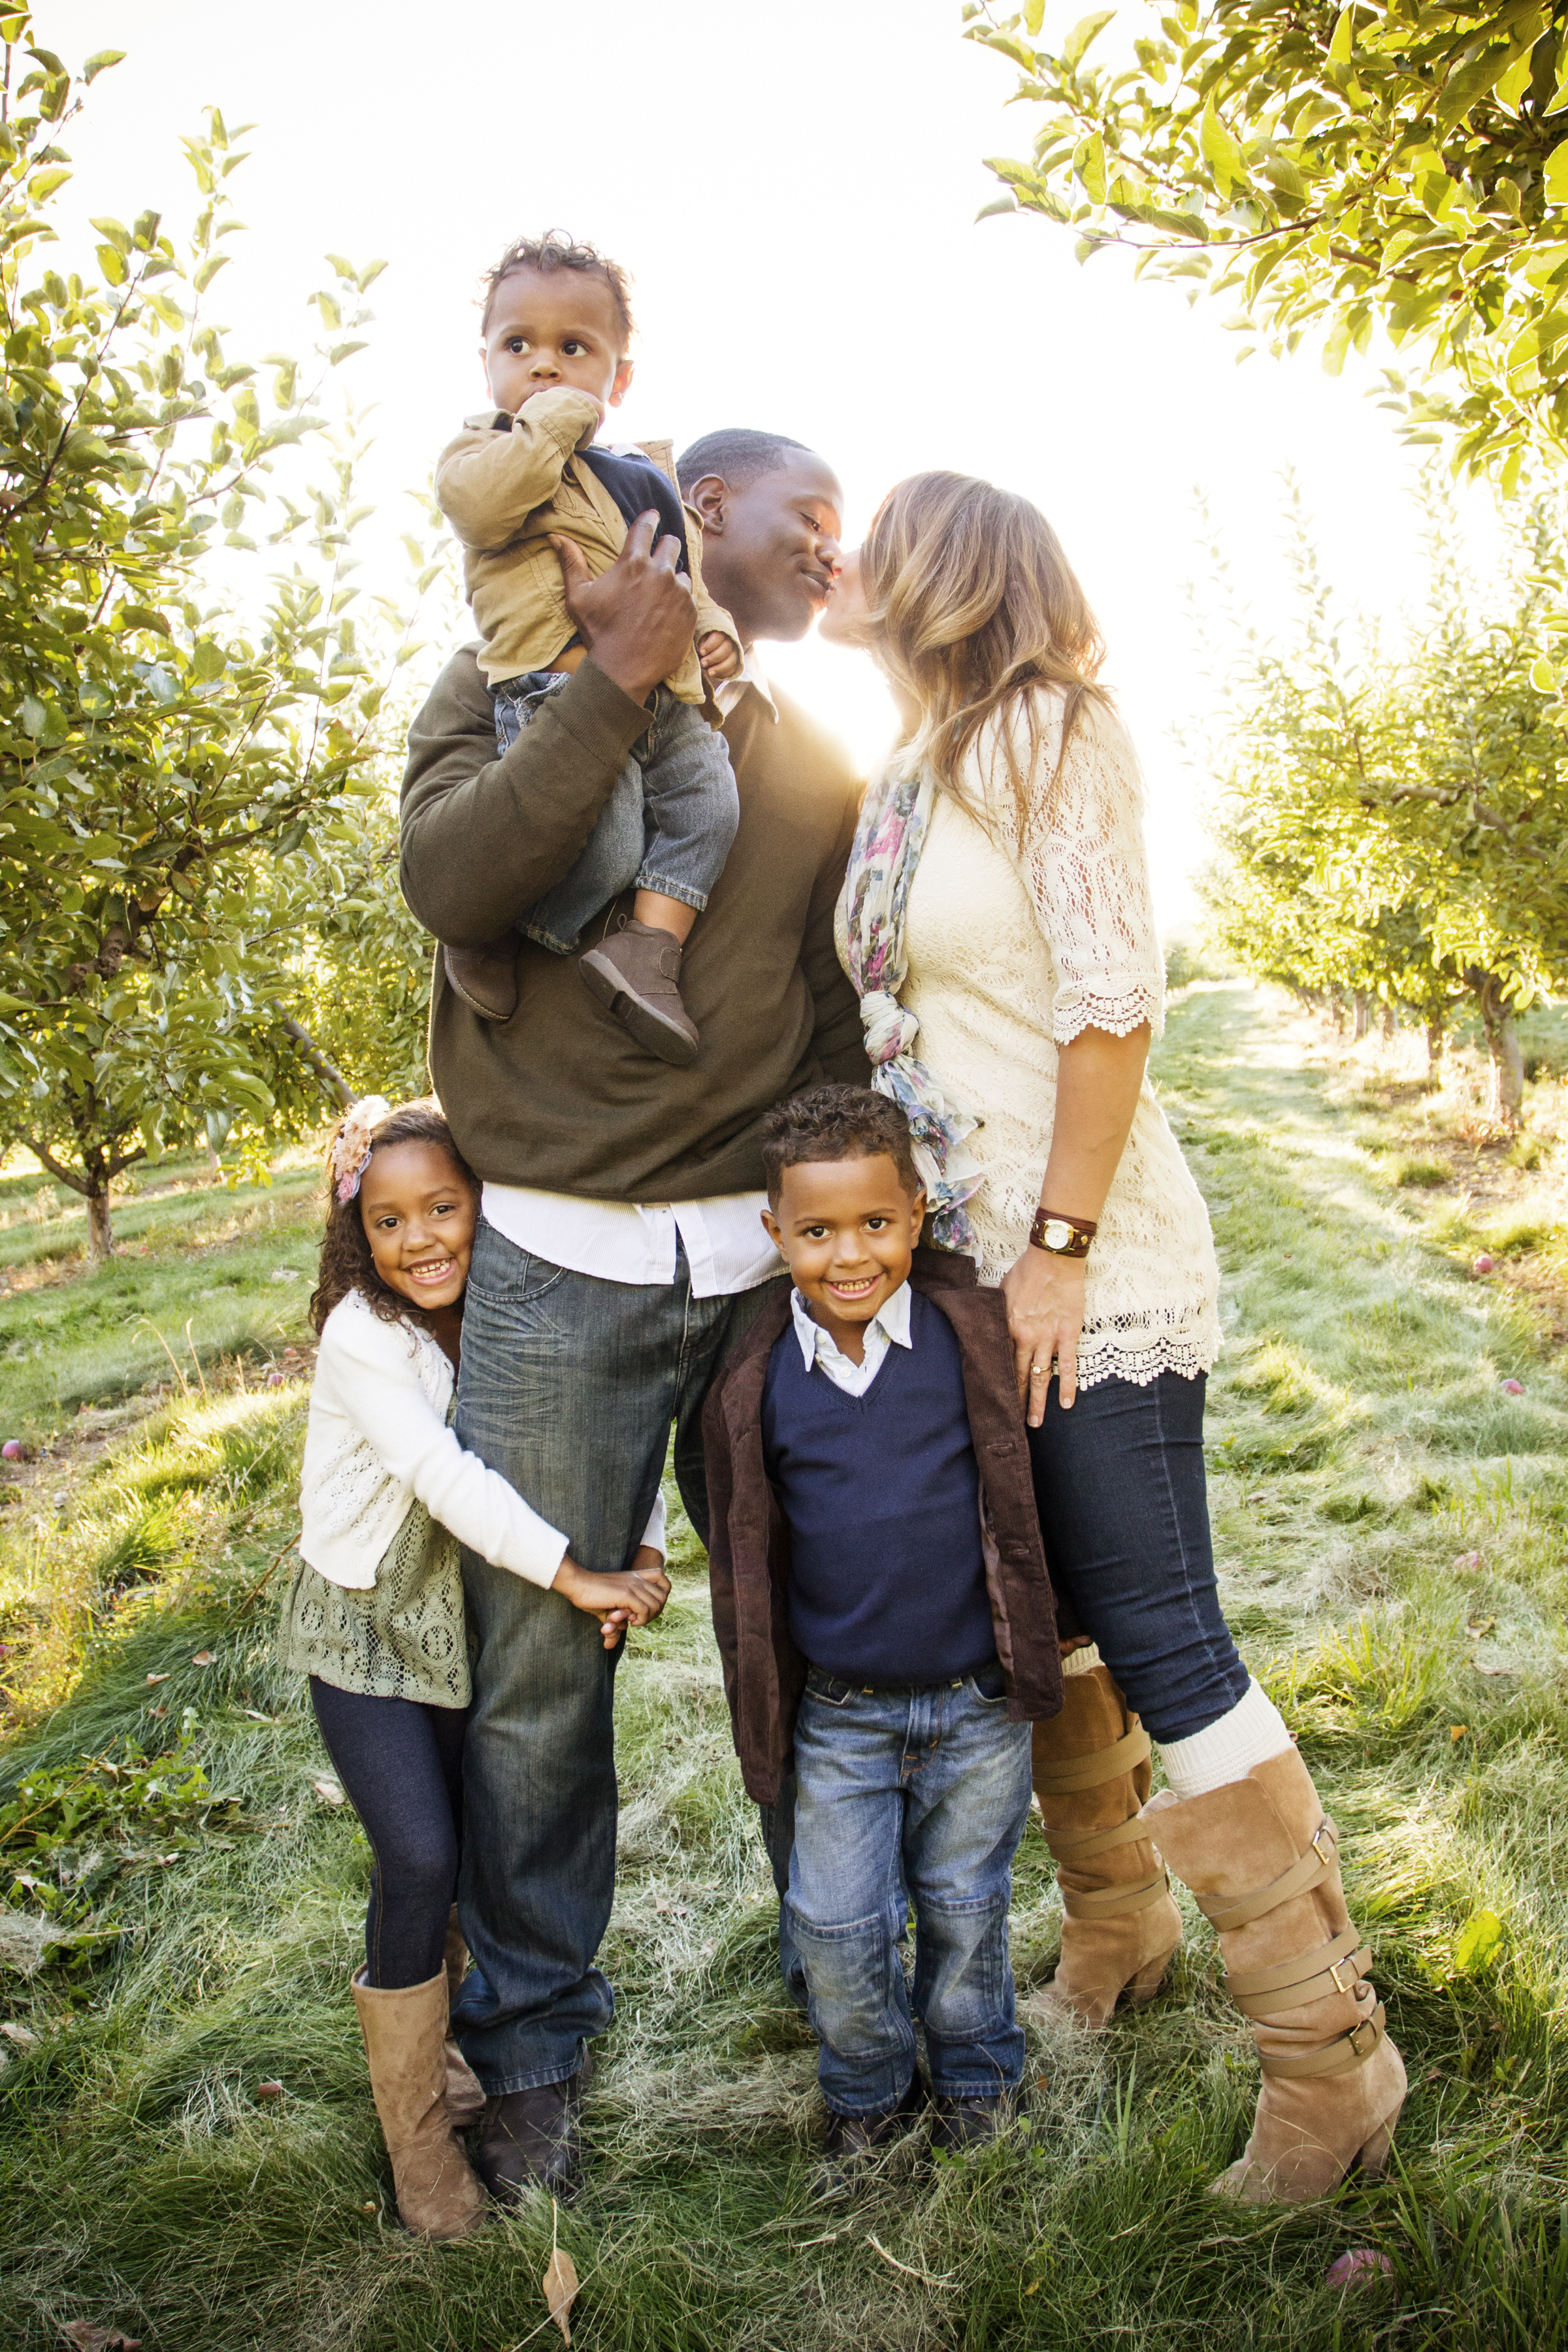 Eine multiethnische Familie, die sich im Freien vergnügt | Quelle: Shutterstock